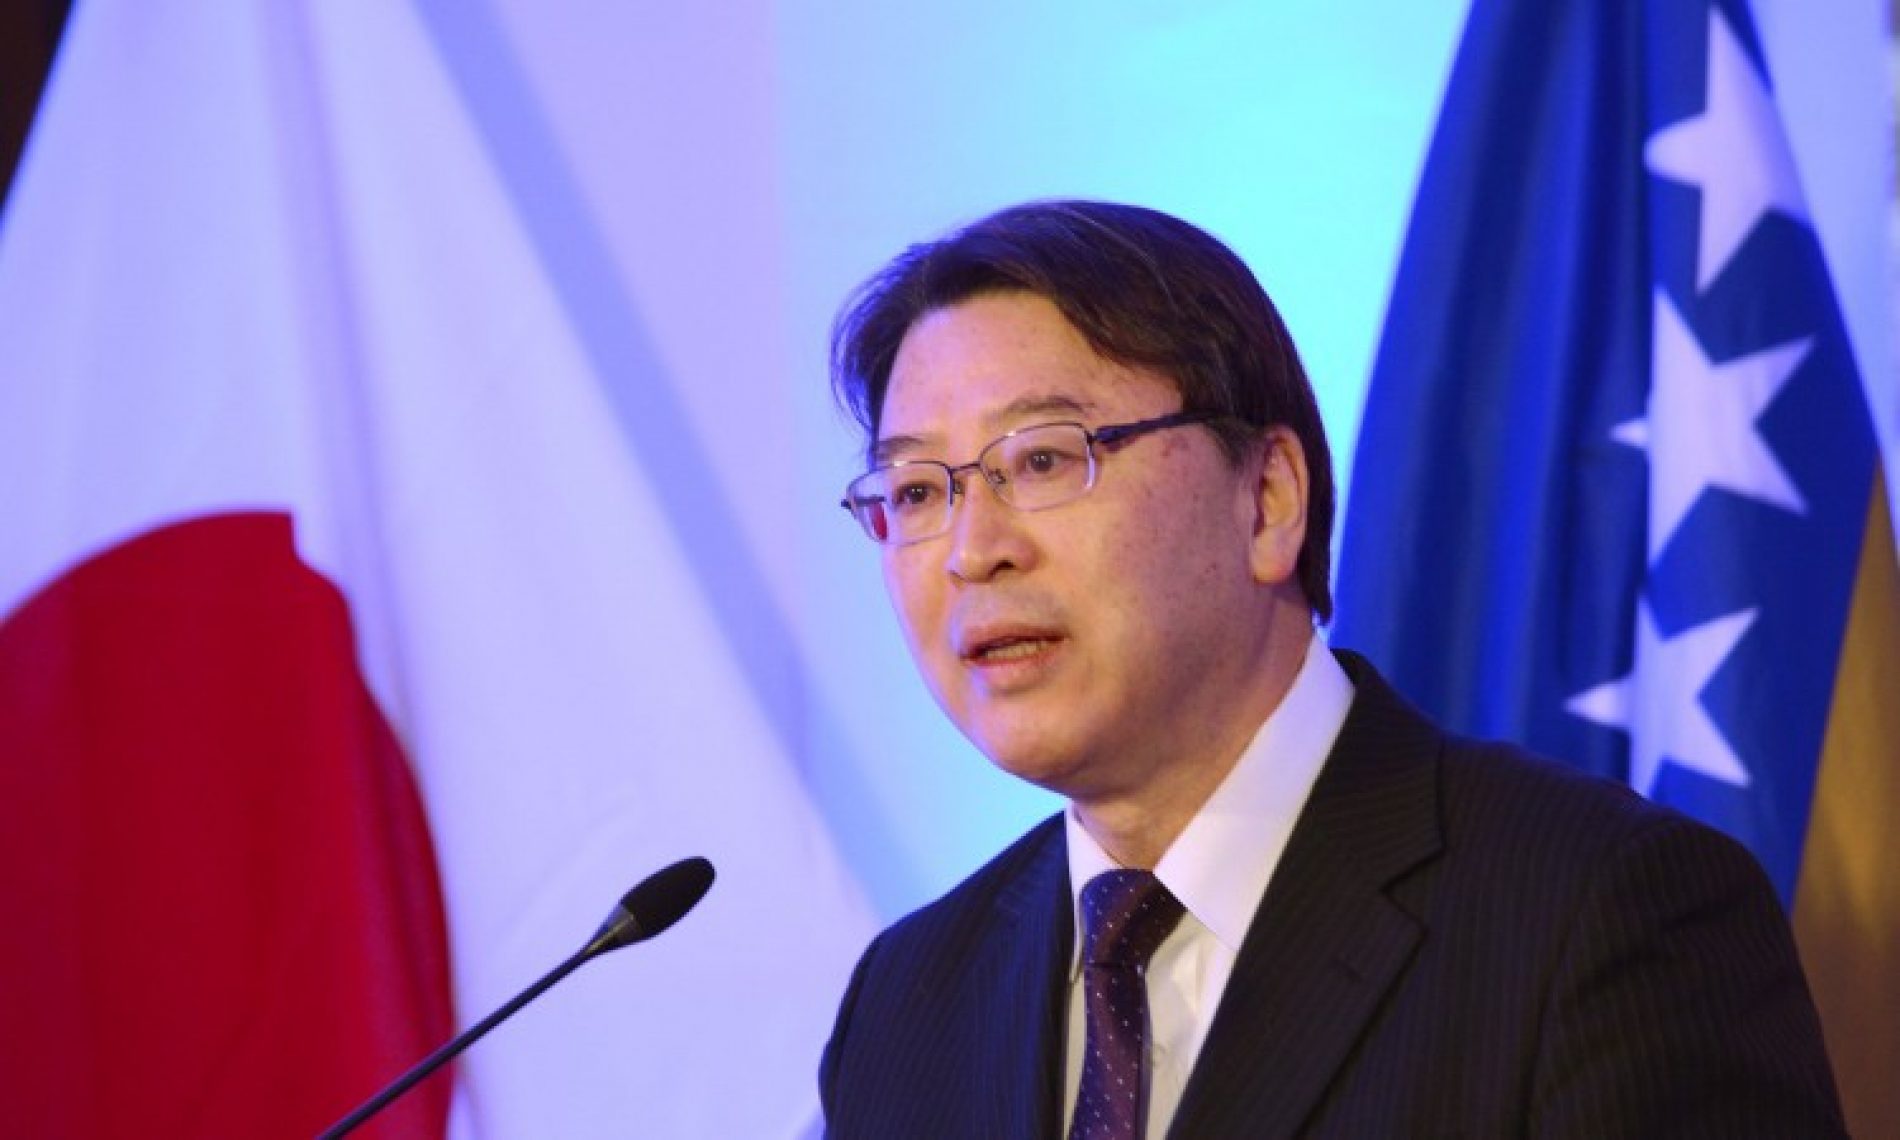 Ambasador Sakamoto: Ekonomska saradnja će biti podignuta na veći nivo; Japan planira otvaranje fabrike u Konjicu